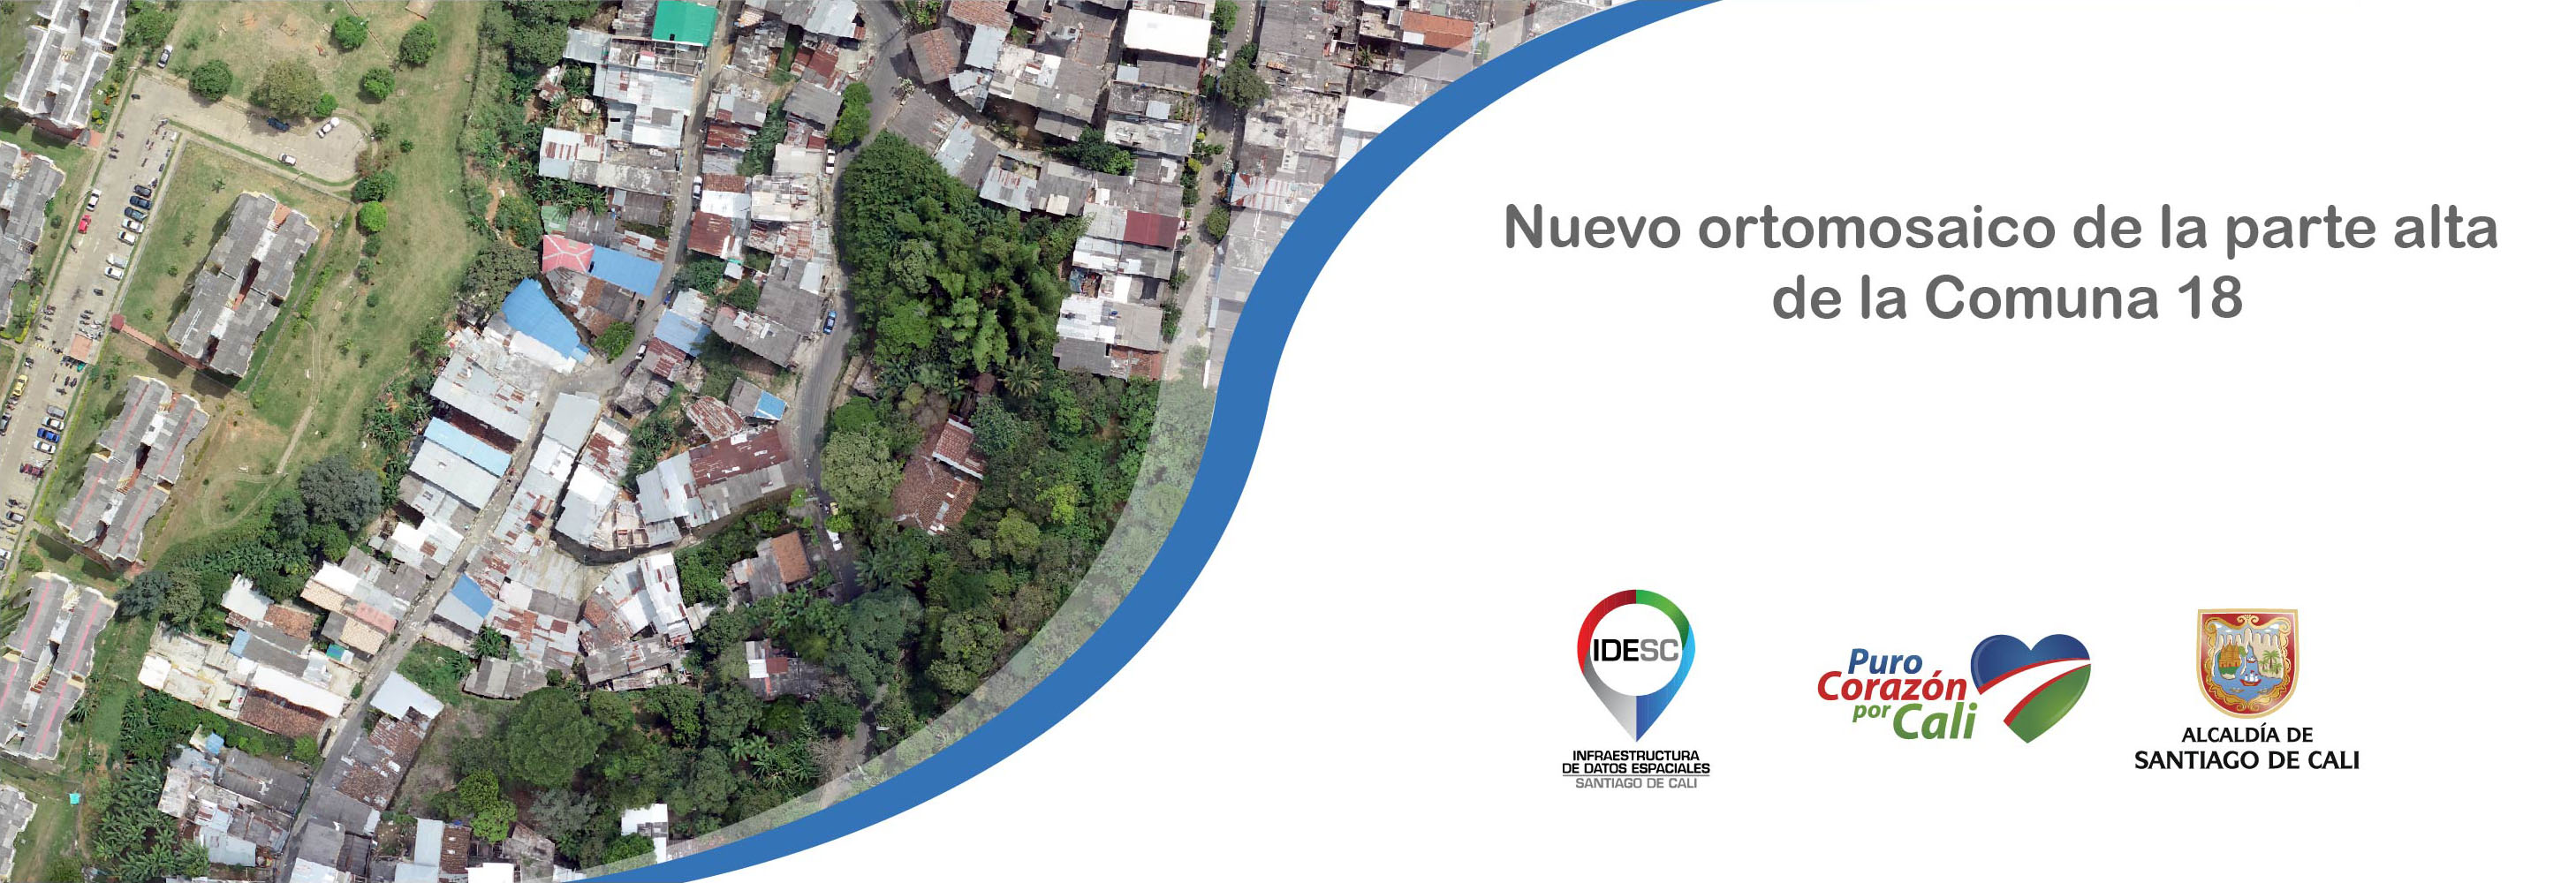 Pieza gráfica que contiene la imagen aérea de la parte alta de la Comuna 18 y en la parte inferior derecha los logos institucionales.